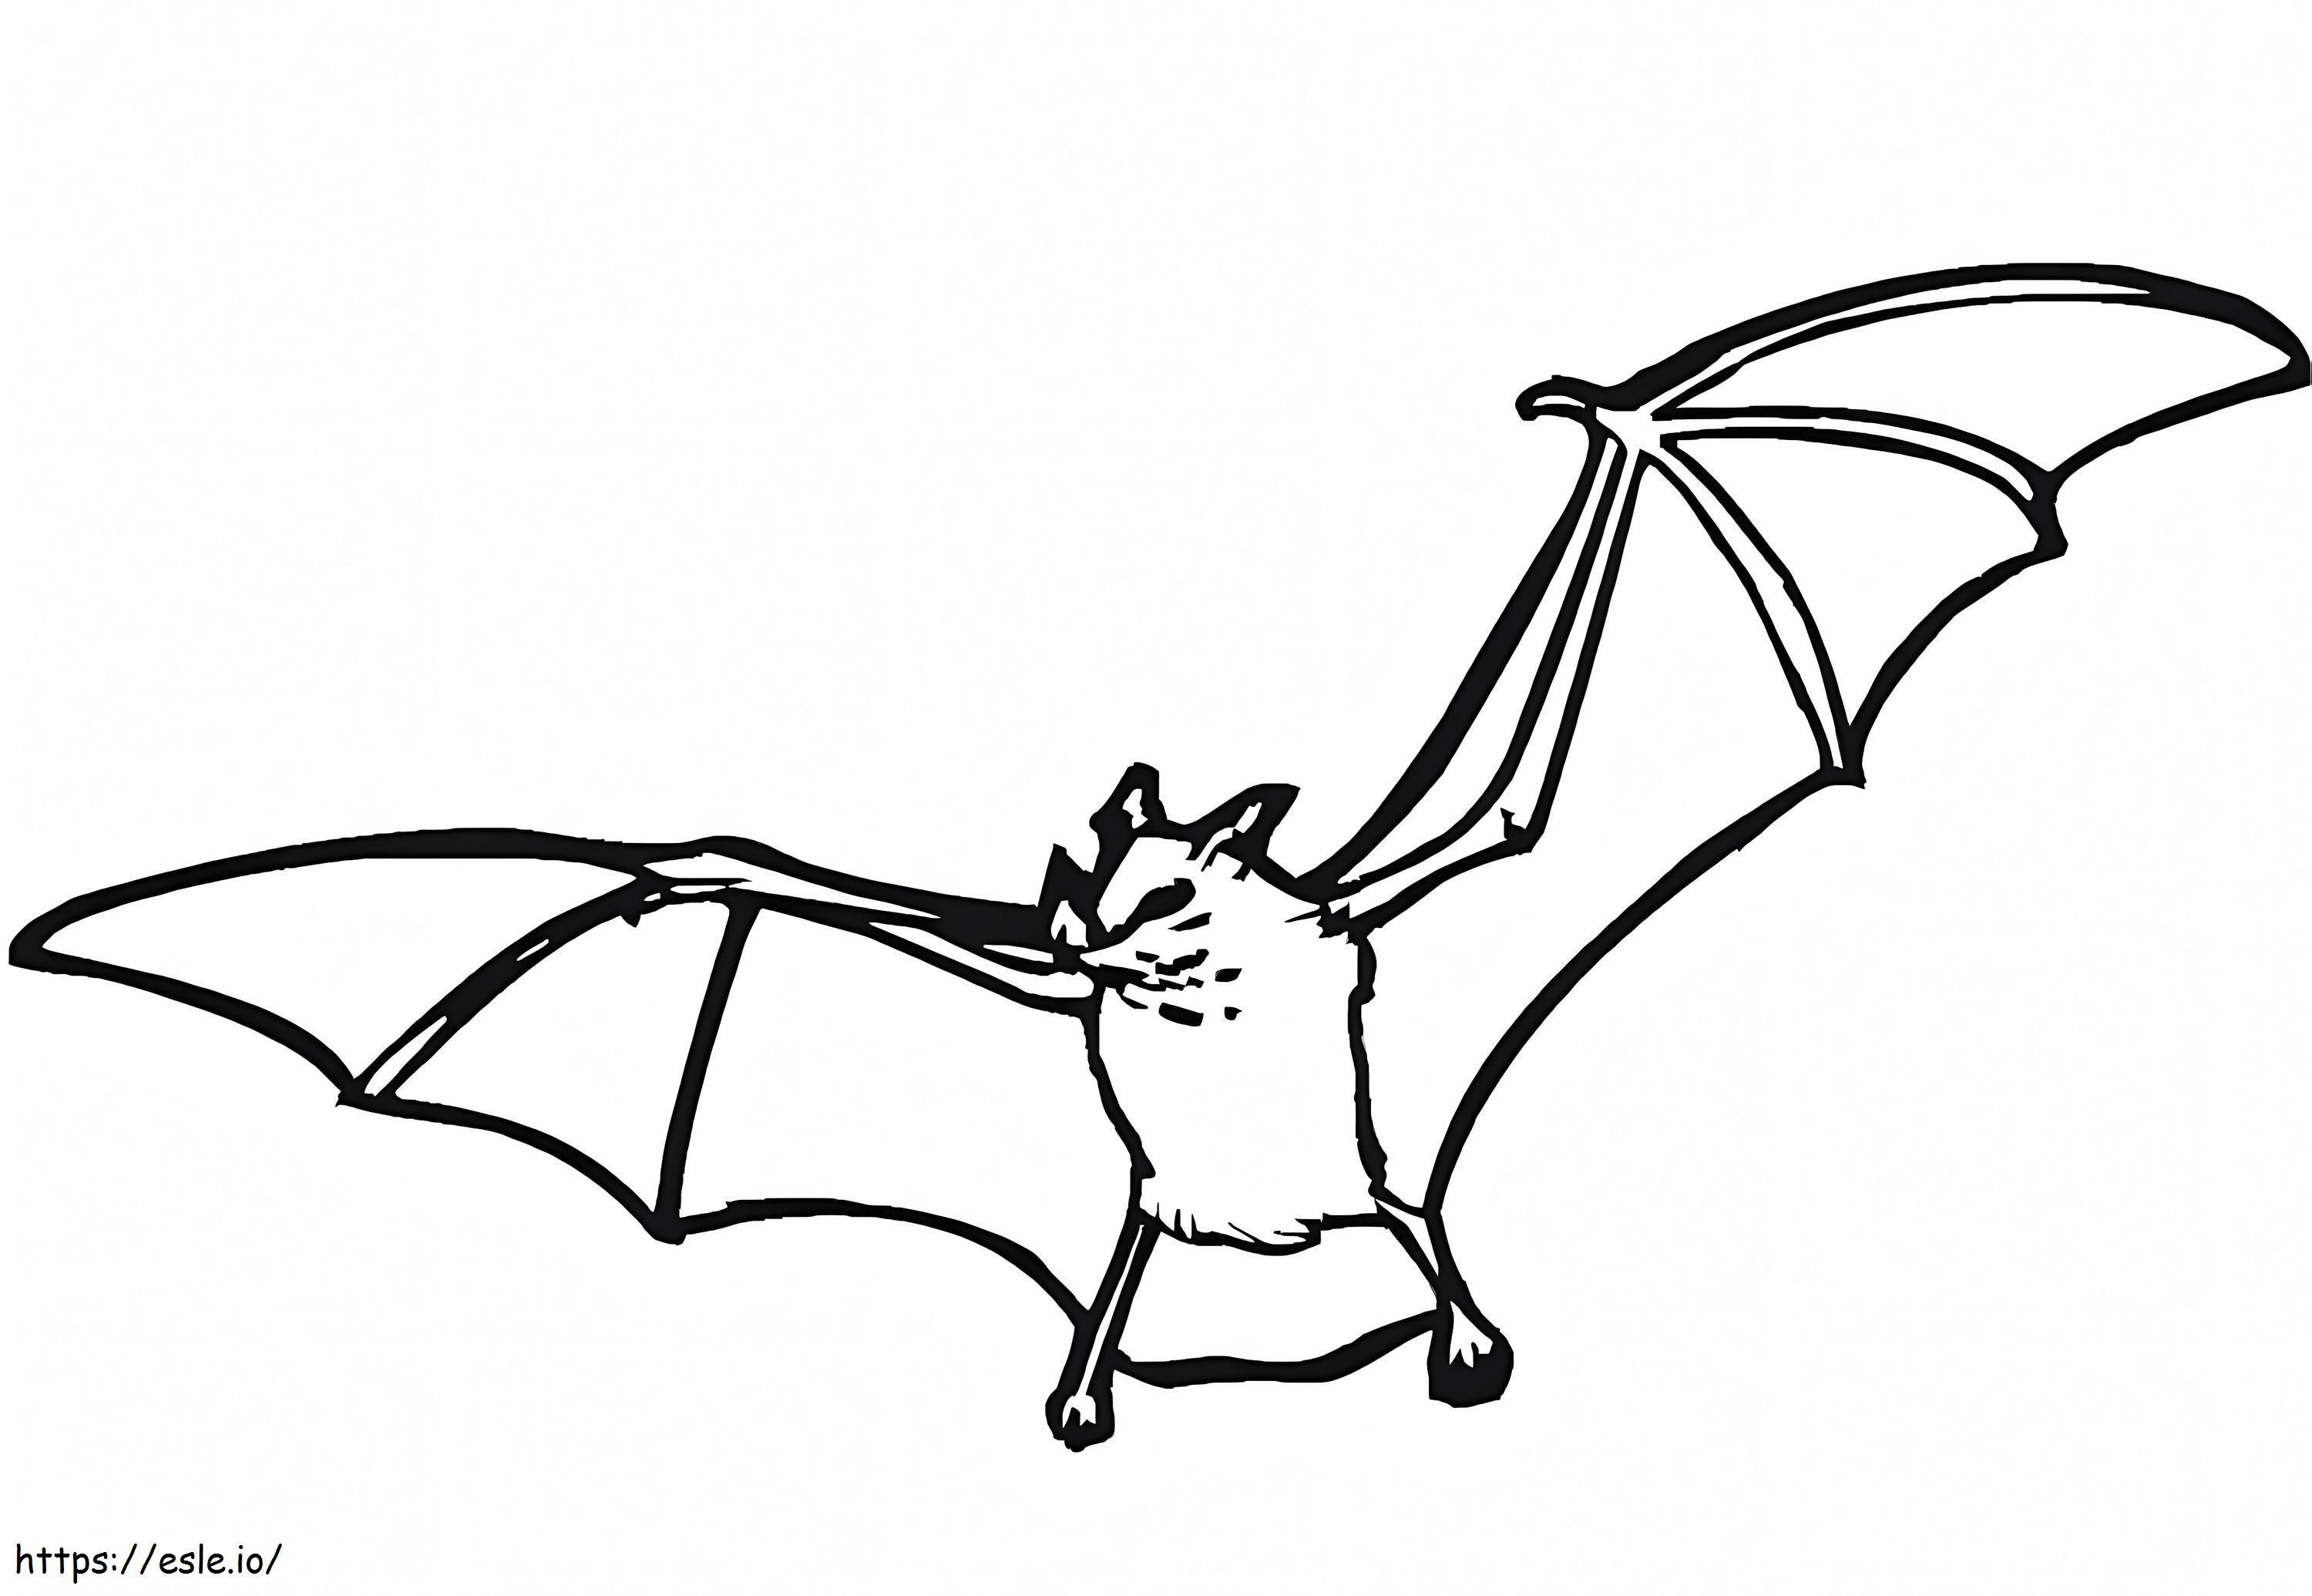 Normál Bat kifestő